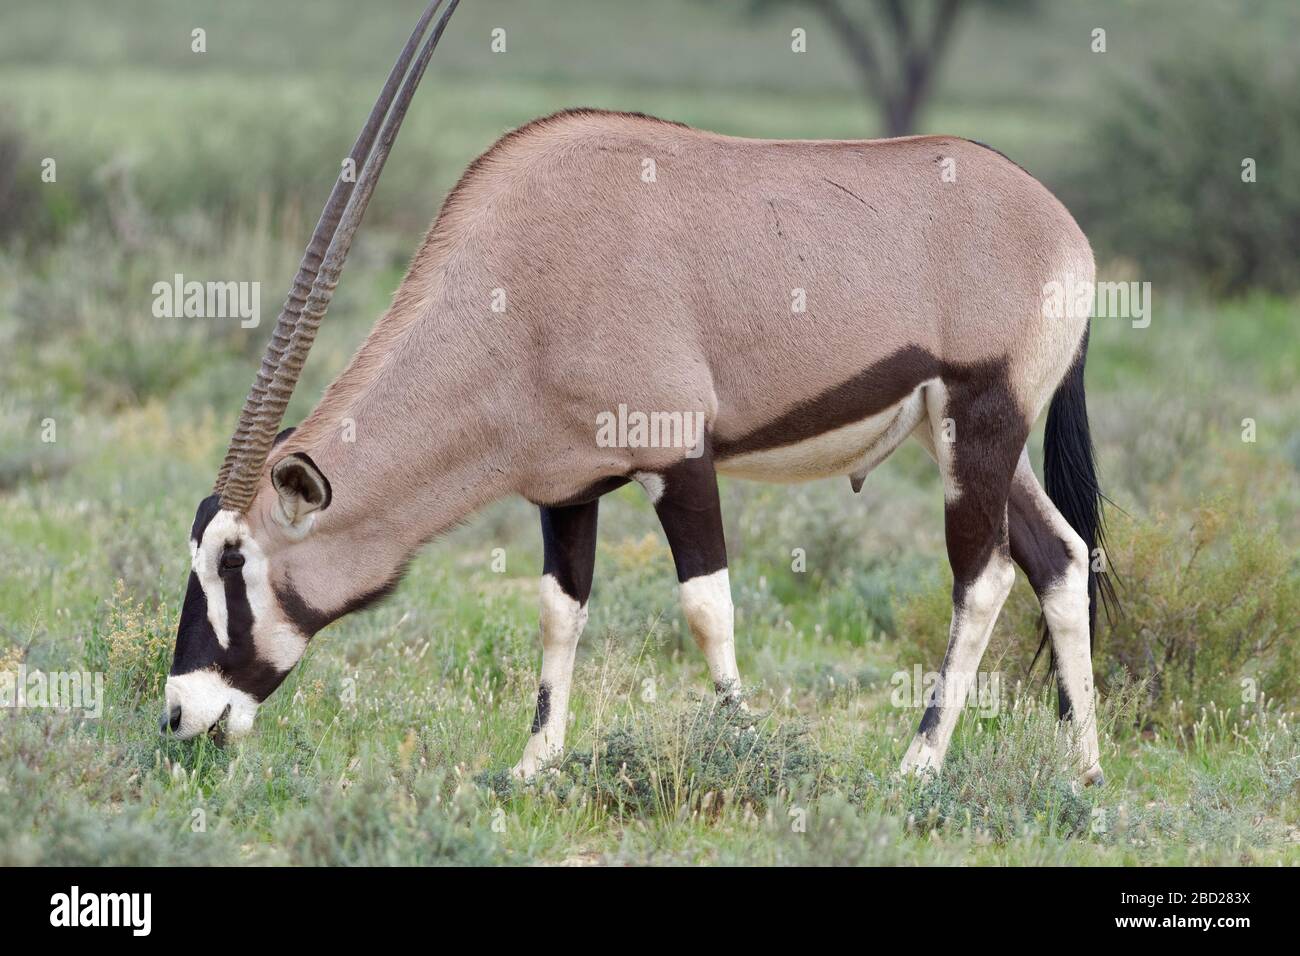 Gemsbok (Oryx gazella), homme adulte, pâturage sur herbe, Kgalagadi TransFrontier Park, Northern Cape, Afrique du Sud, Afrique Banque D'Images